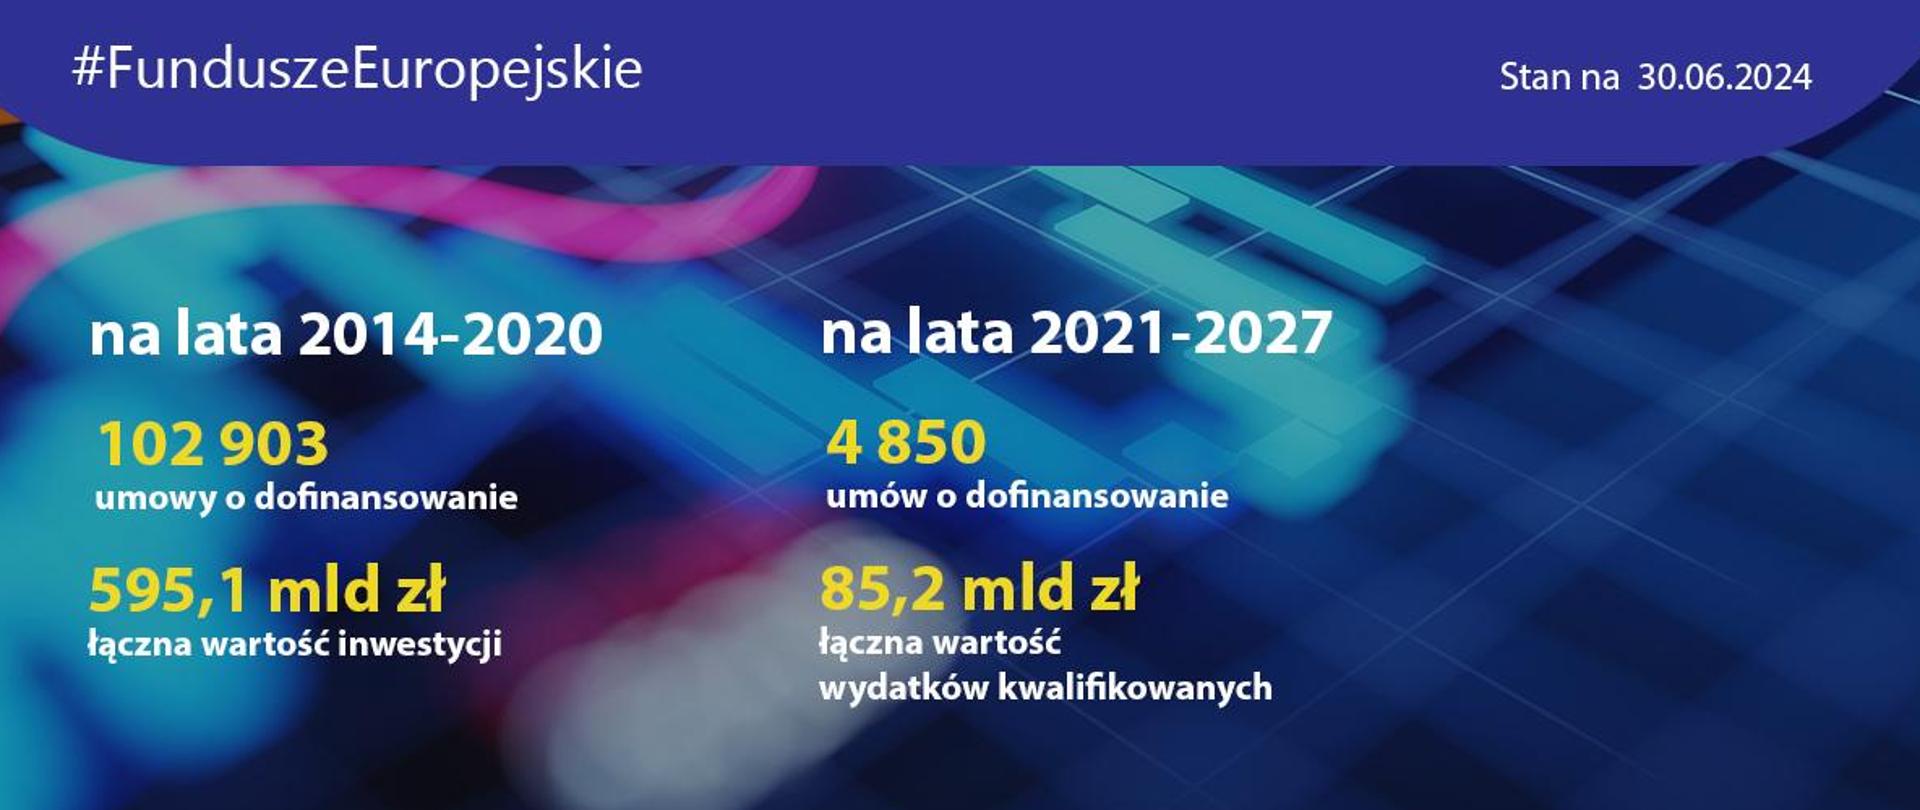 Postępy w realizacji programów na lata 2014-2020 oraz 2021-2027 - liczby dotyczące m.in. umów o dofinansowanie
